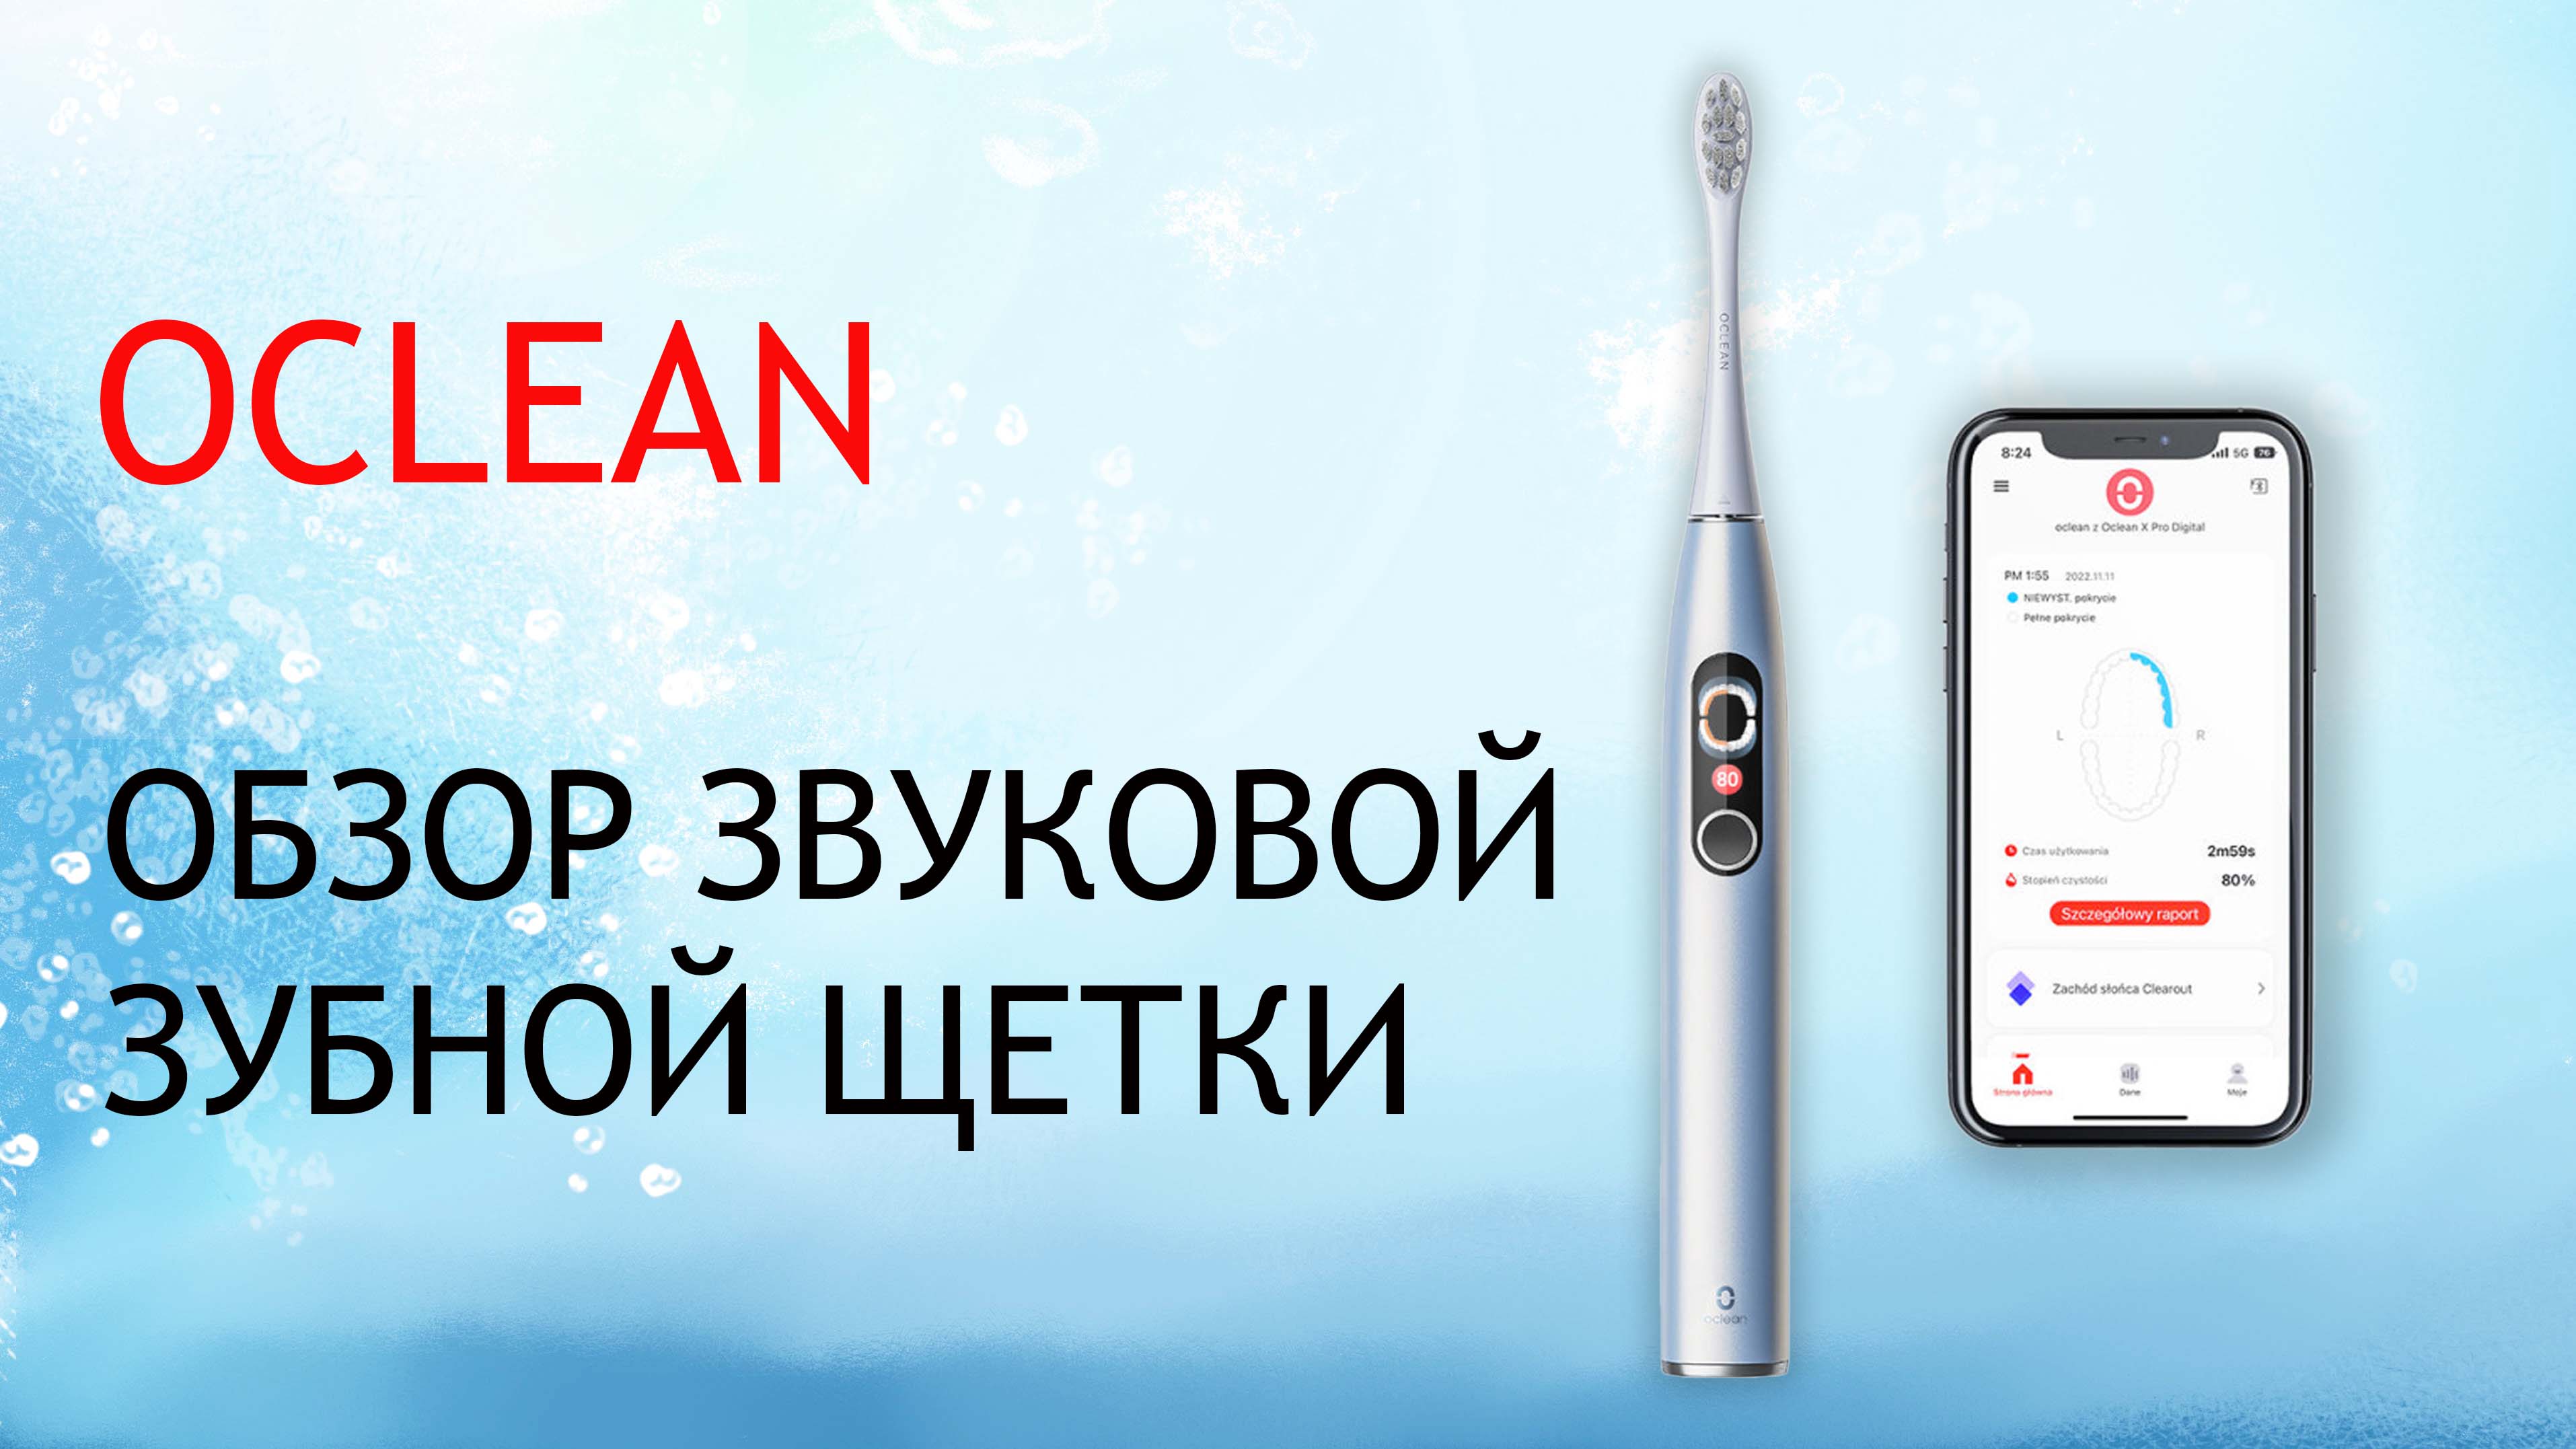 Oclean X Pro Digital - распаковка и обзор звуковой зубной щетки